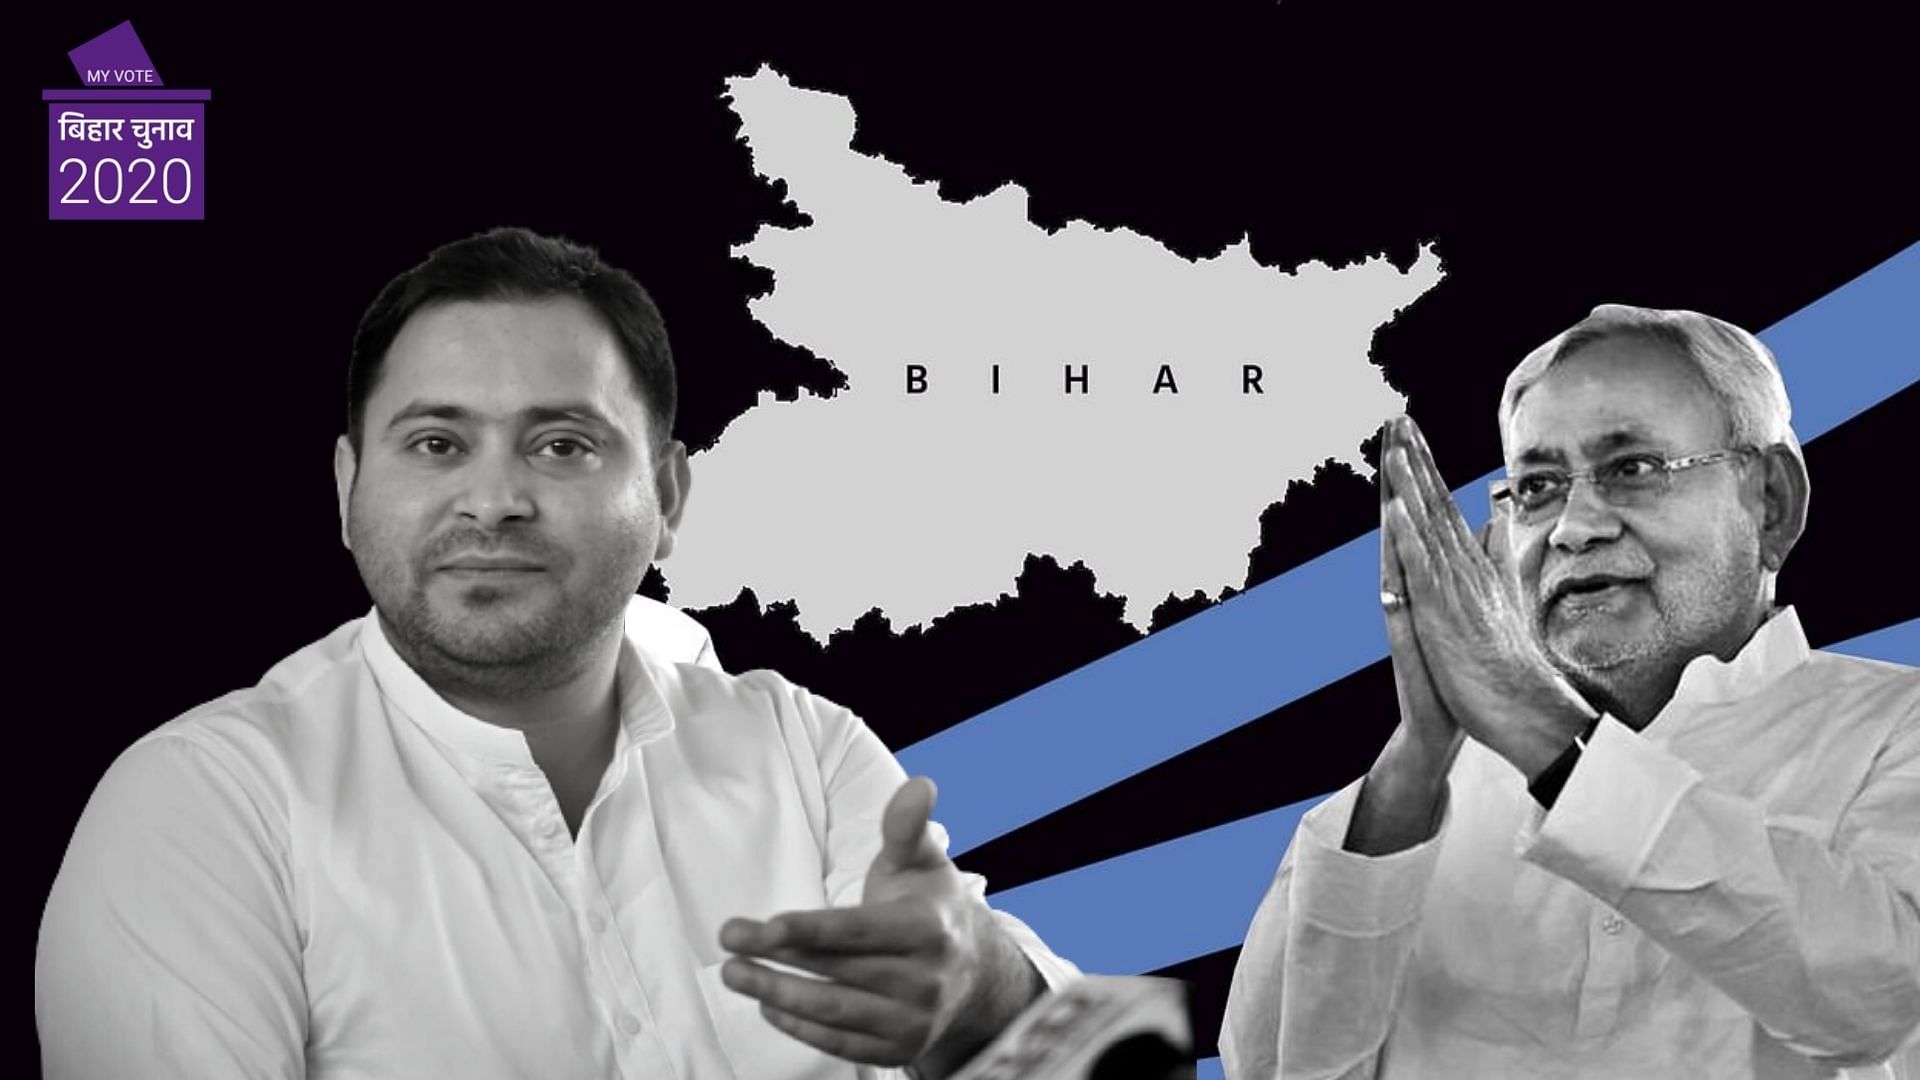 Bihar election 2020 : दूसरे चरण में RJD, JDU को अपनी सीटें सुरक्षित रखना चुनौती 